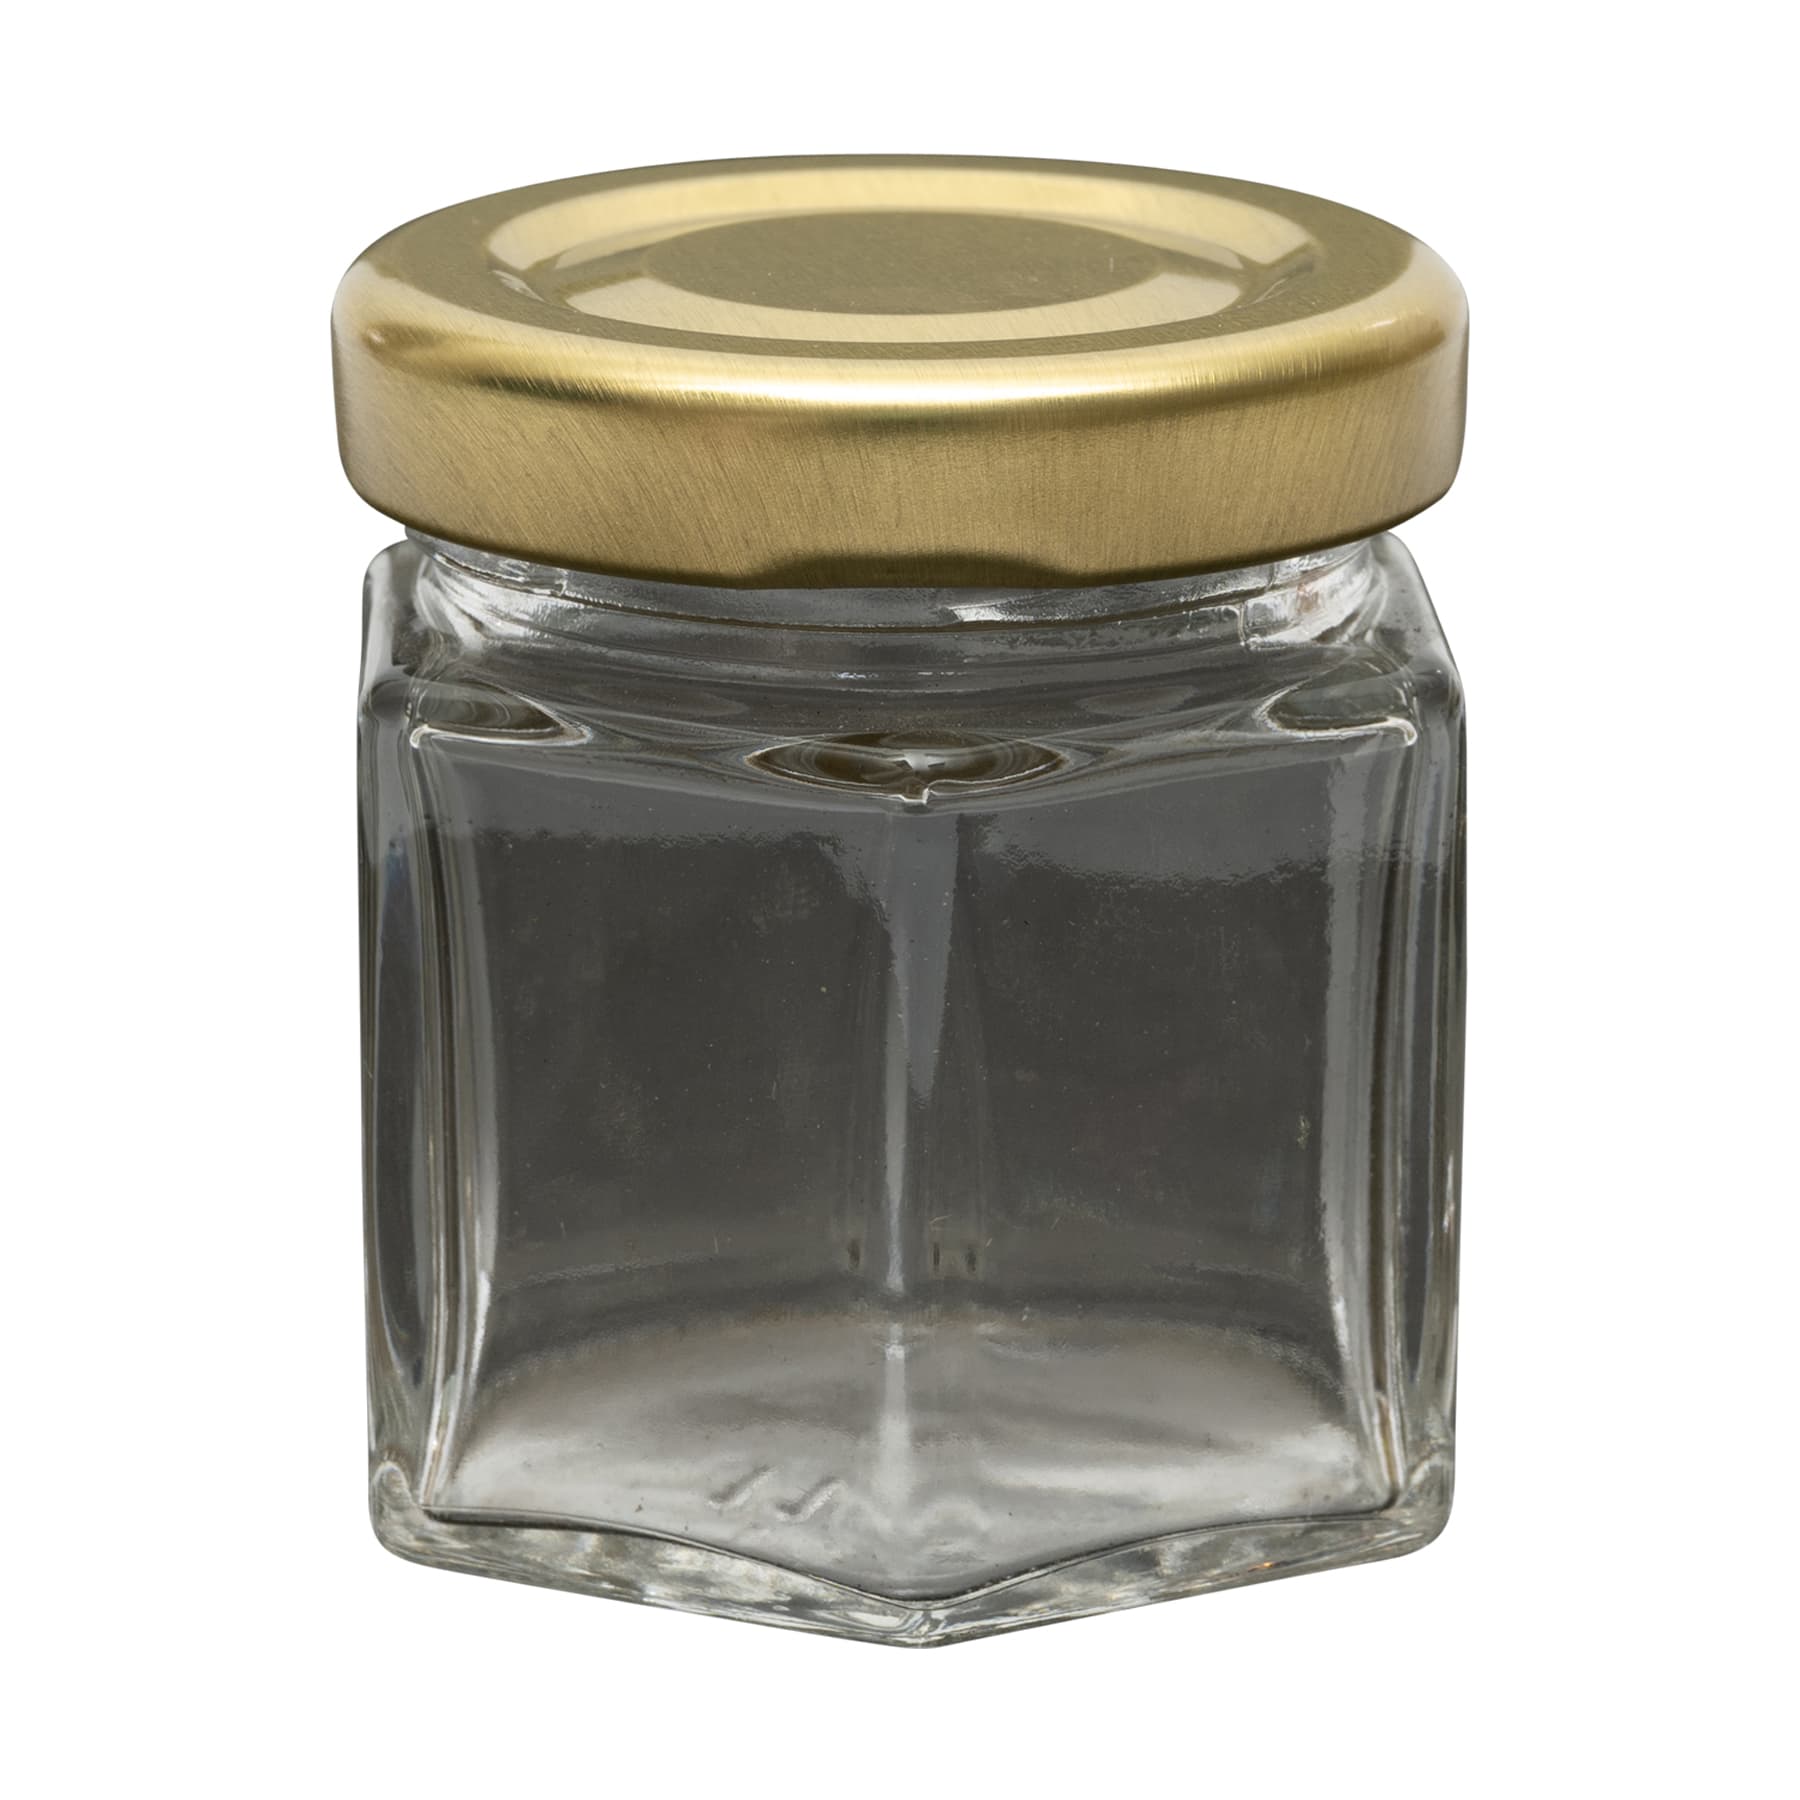 Sechseckglas 45 ml mit TO Metalldeckel gold 43 mm für ca. 50 g Honig